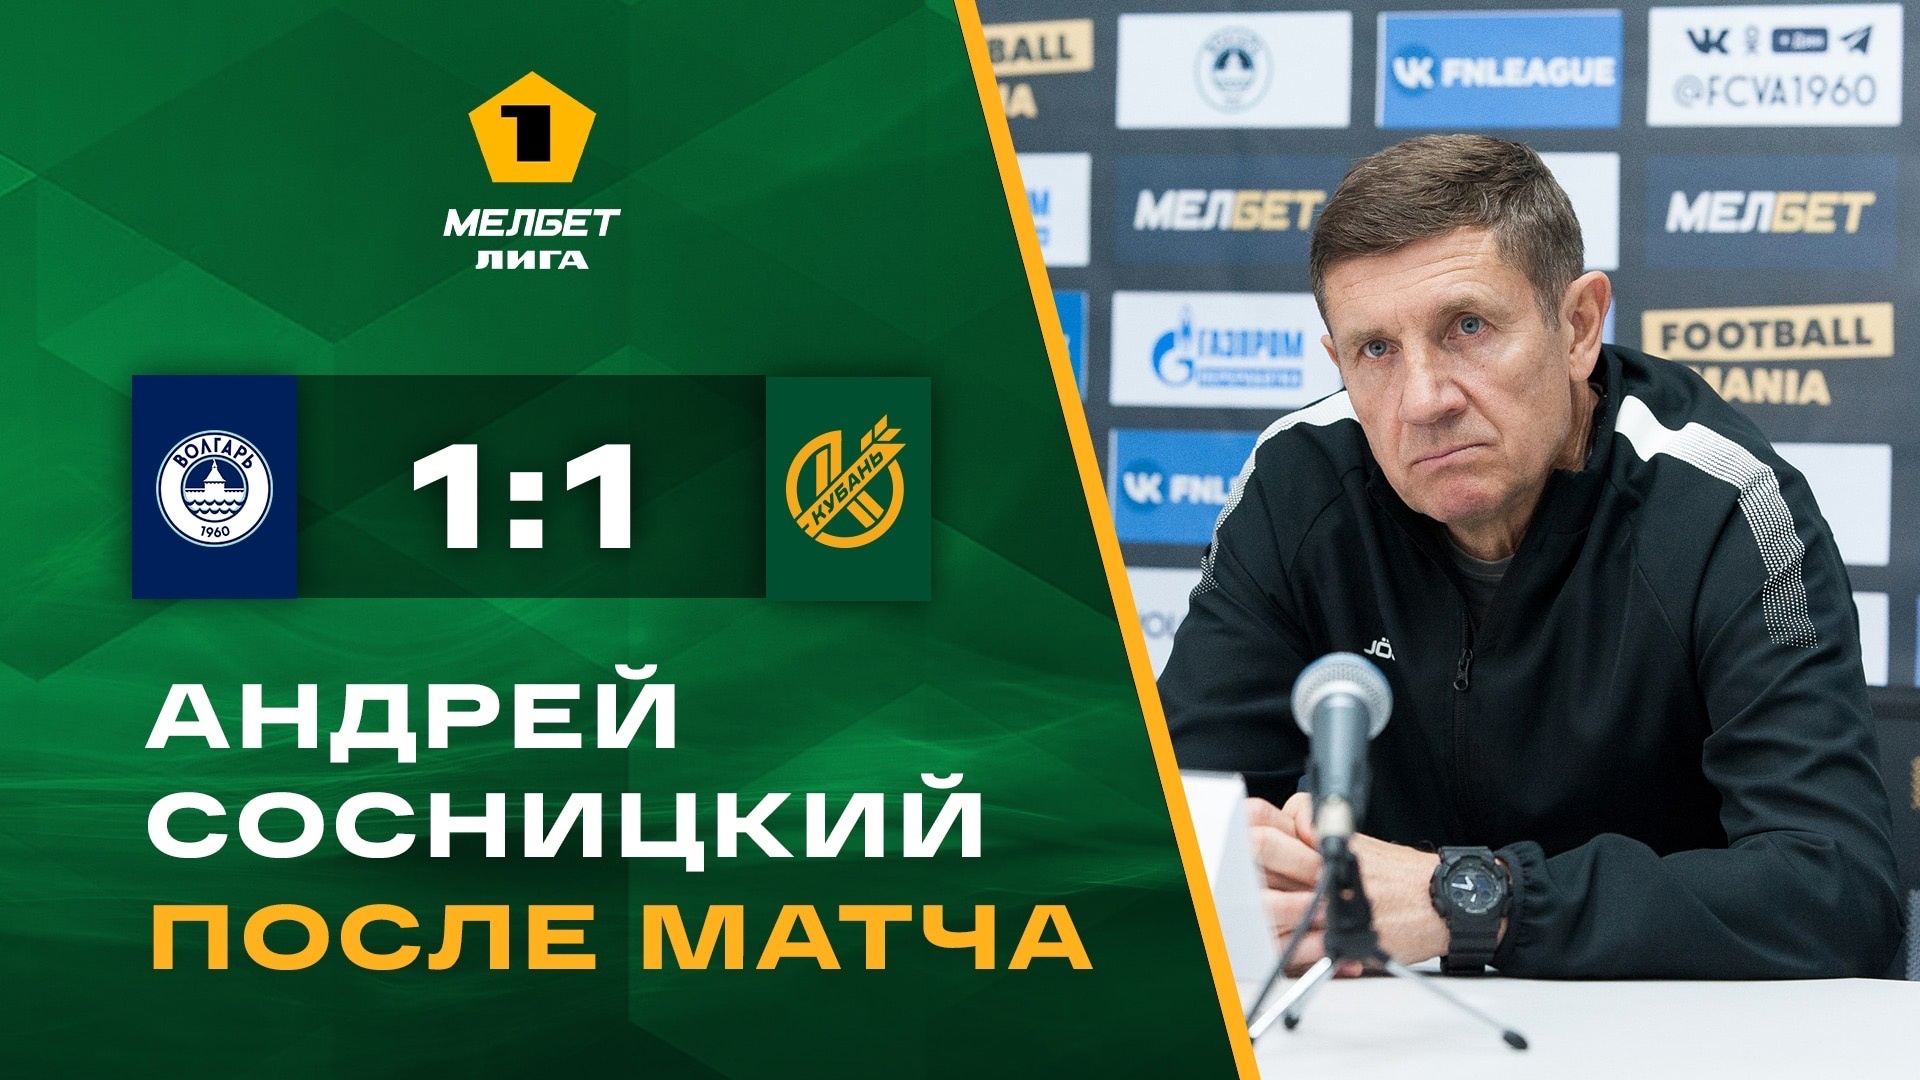 Главный тренер «Кубани» Андрей Сосницкий подвел итоги матча с «Волгарем» на пресс-конференции